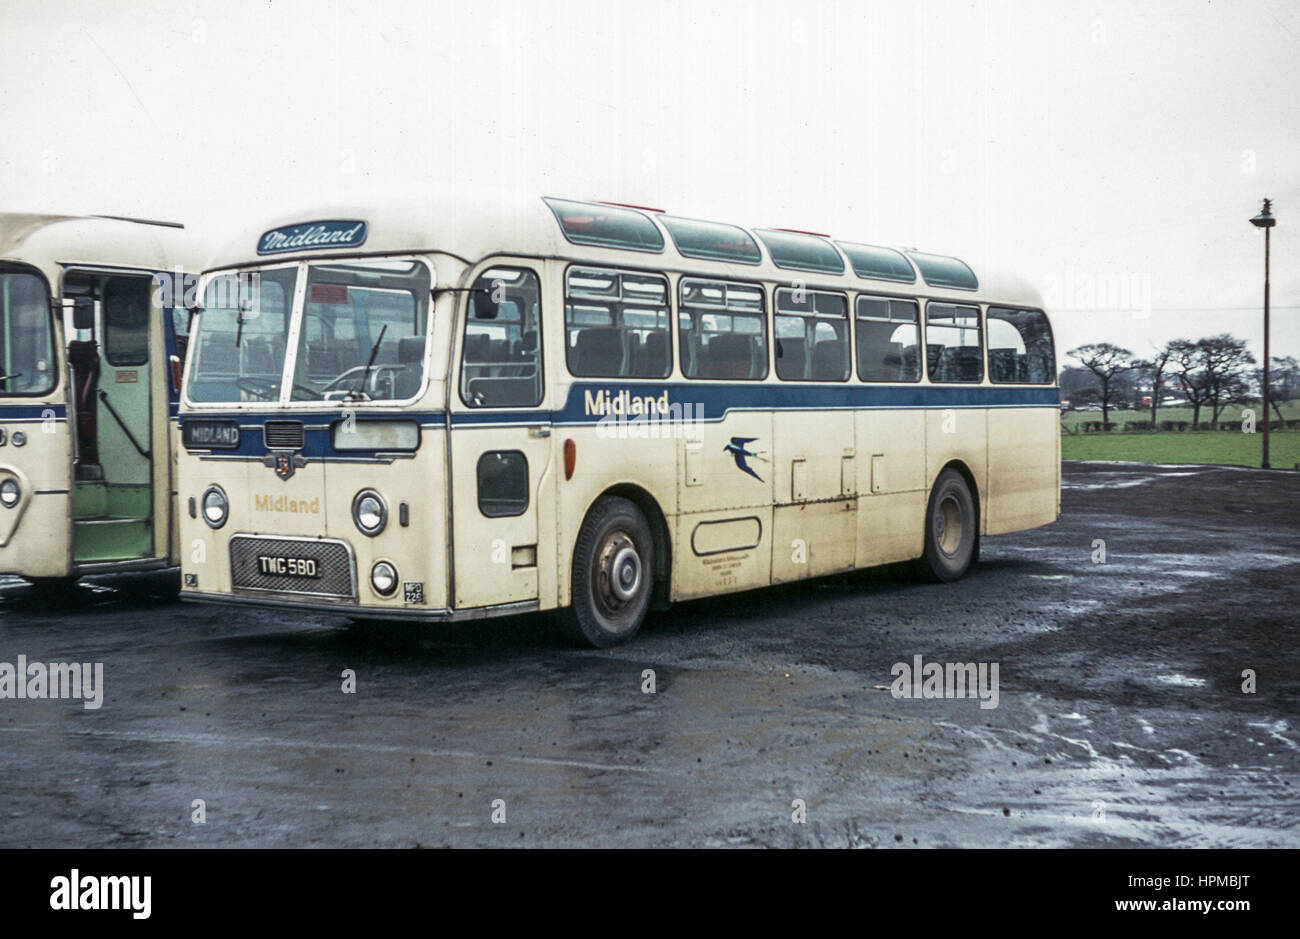 Escocia, Reino Unido - 1973: Vintage imagen del bus. Alexander Midland Leyland Tiger Cub coach MPD226 GTT (número de registro 580). Foto de stock